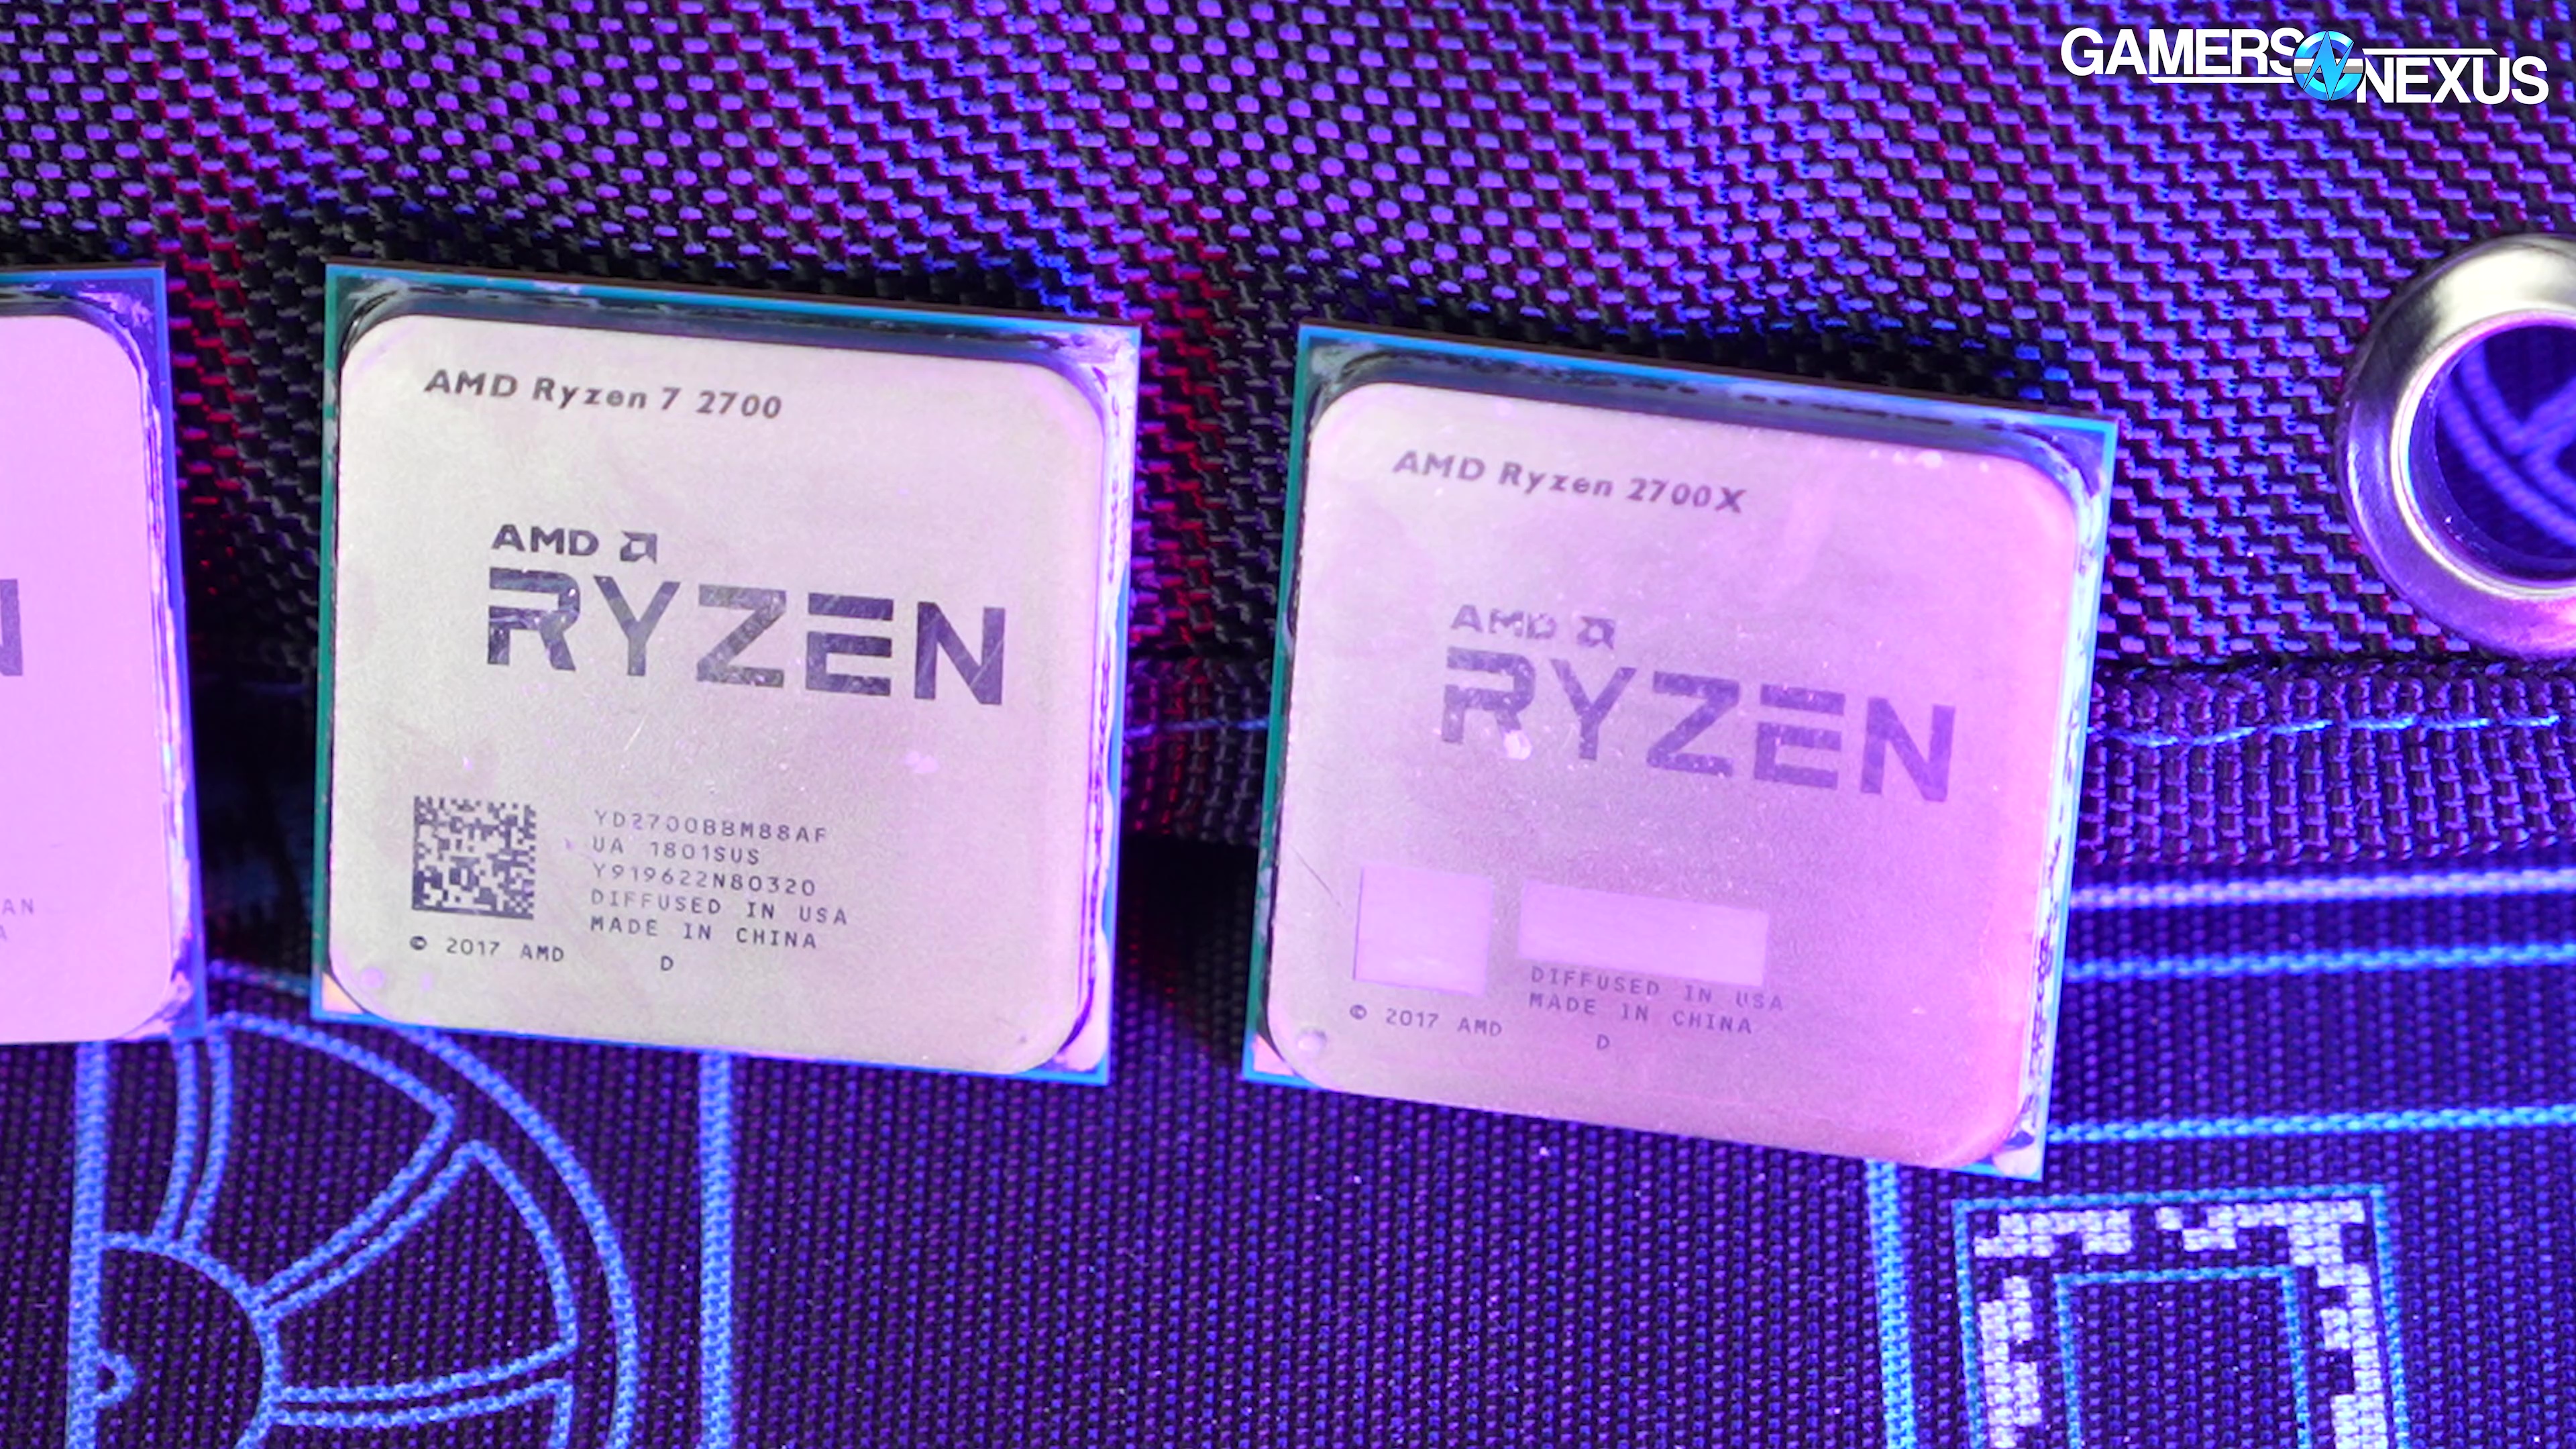 Ryzen 7 7800X3D vs Ryzen 7 5800X - PC Guide